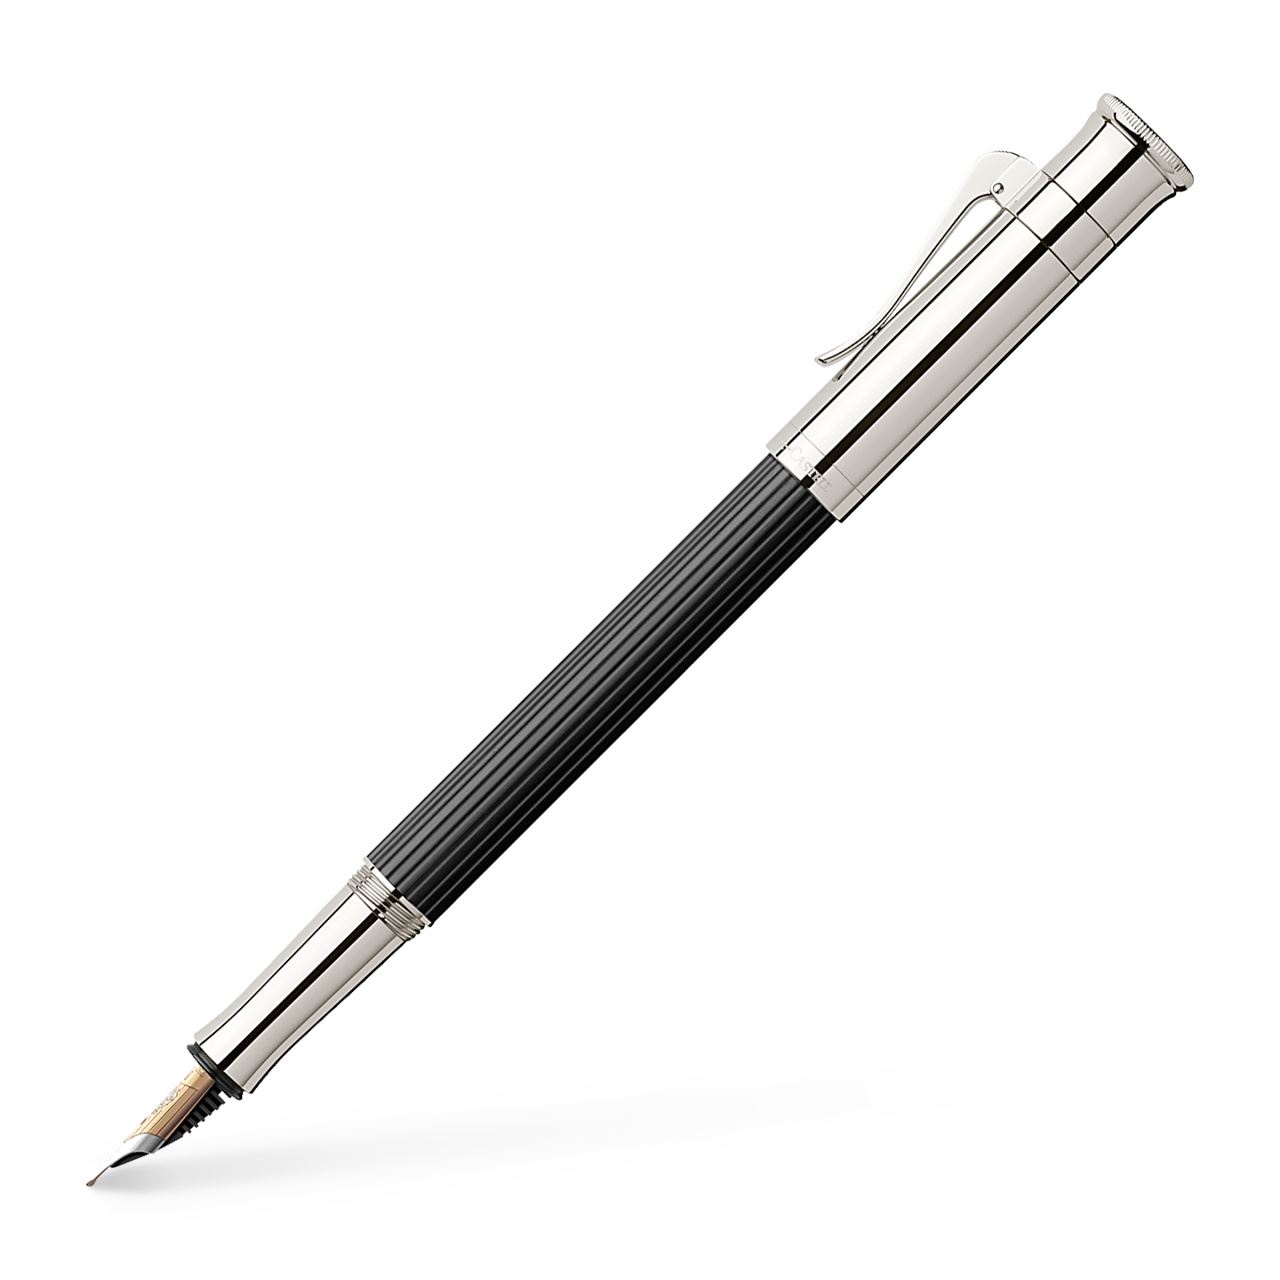 Graf-von-Faber-Castell - Fountain pen Classic Ebony EF